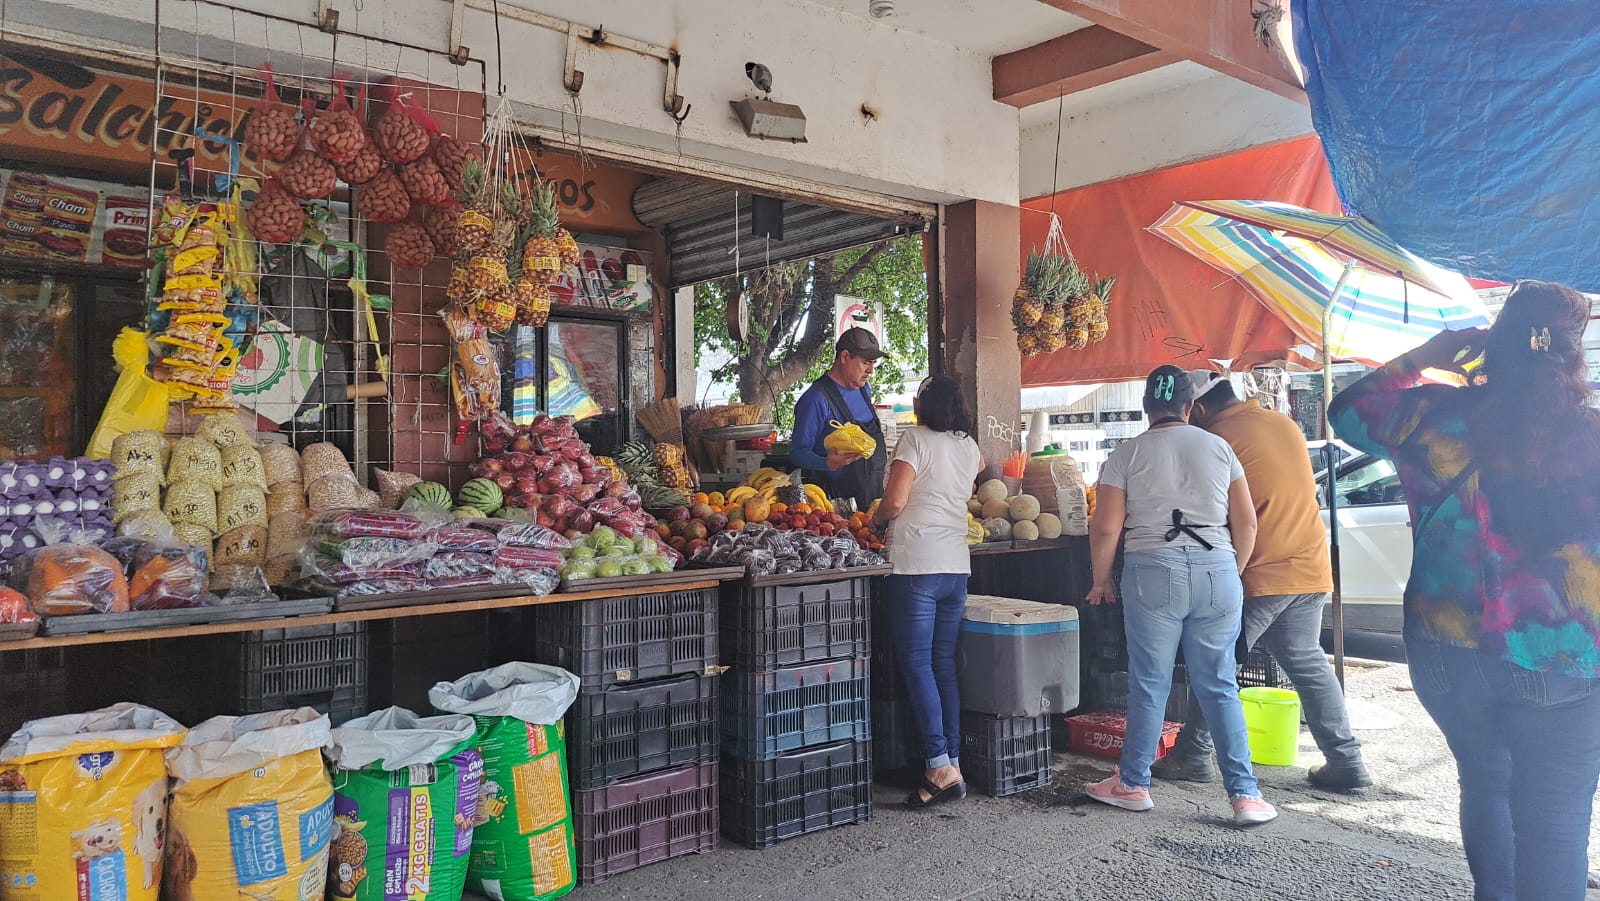 Empiezan a escasear las verduras y suben su precio: comerciantes de Los Mochis